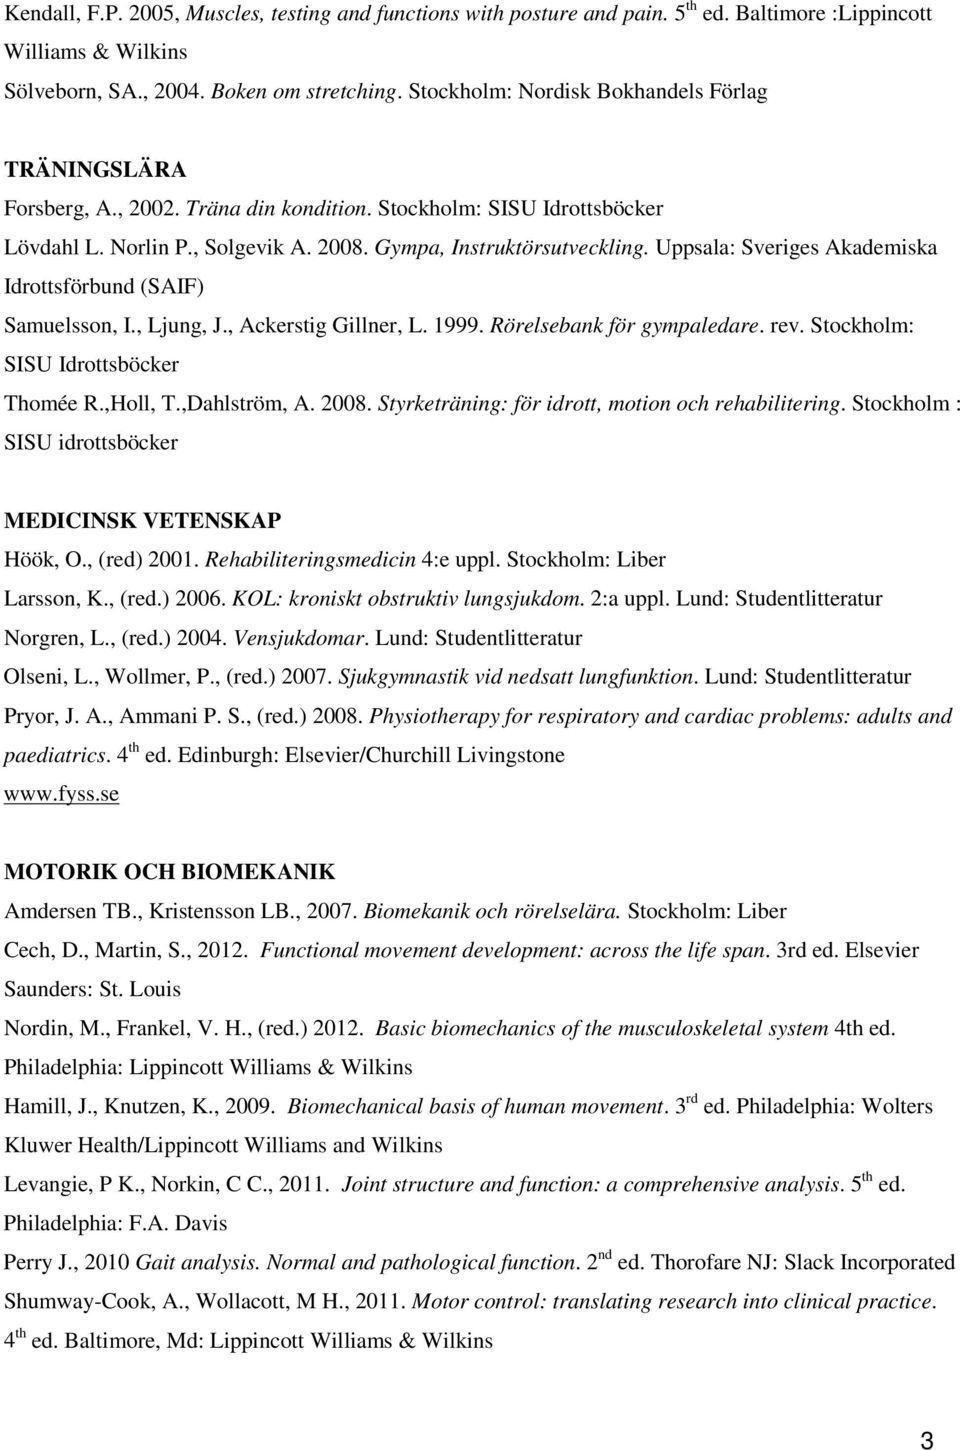 Uppsala: Sveriges Akademiska Idrottsförbund (SAIF) Samuelsson, I., Ljung, J., Ackerstig Gillner, L. 1999. Rörelsebank för gympaledare. rev. Stockholm: SISU Idrottsböcker Thomée R.,Holl, T.